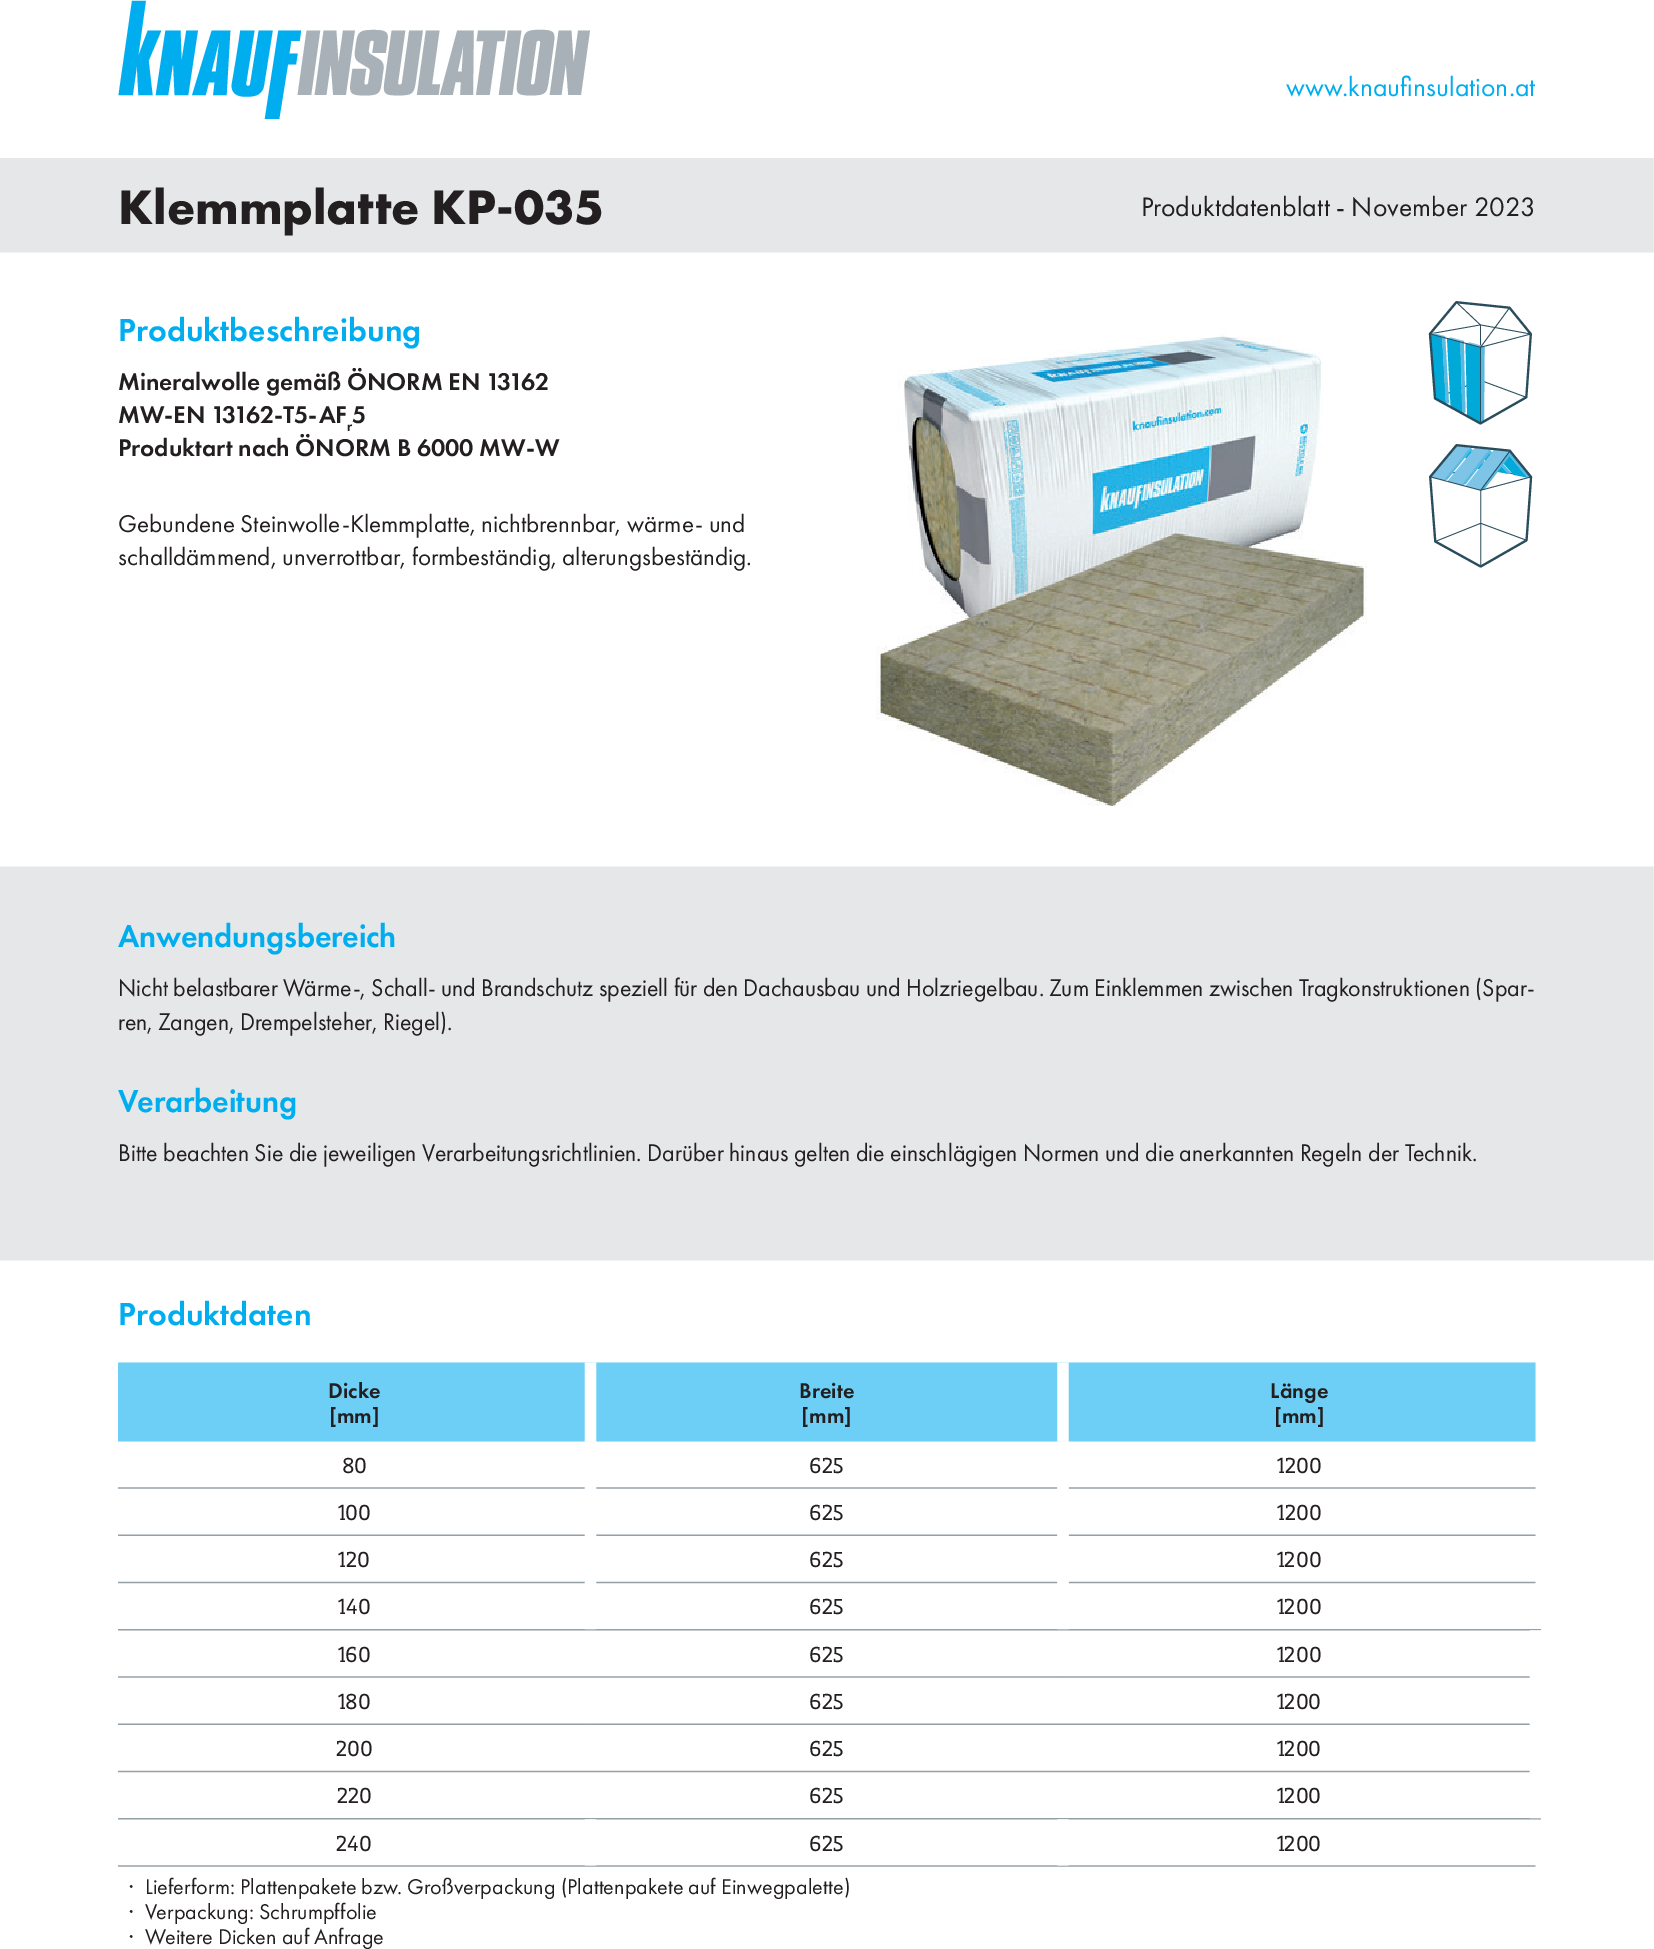 Klemmplatte KP-035, Produktdatenblatt